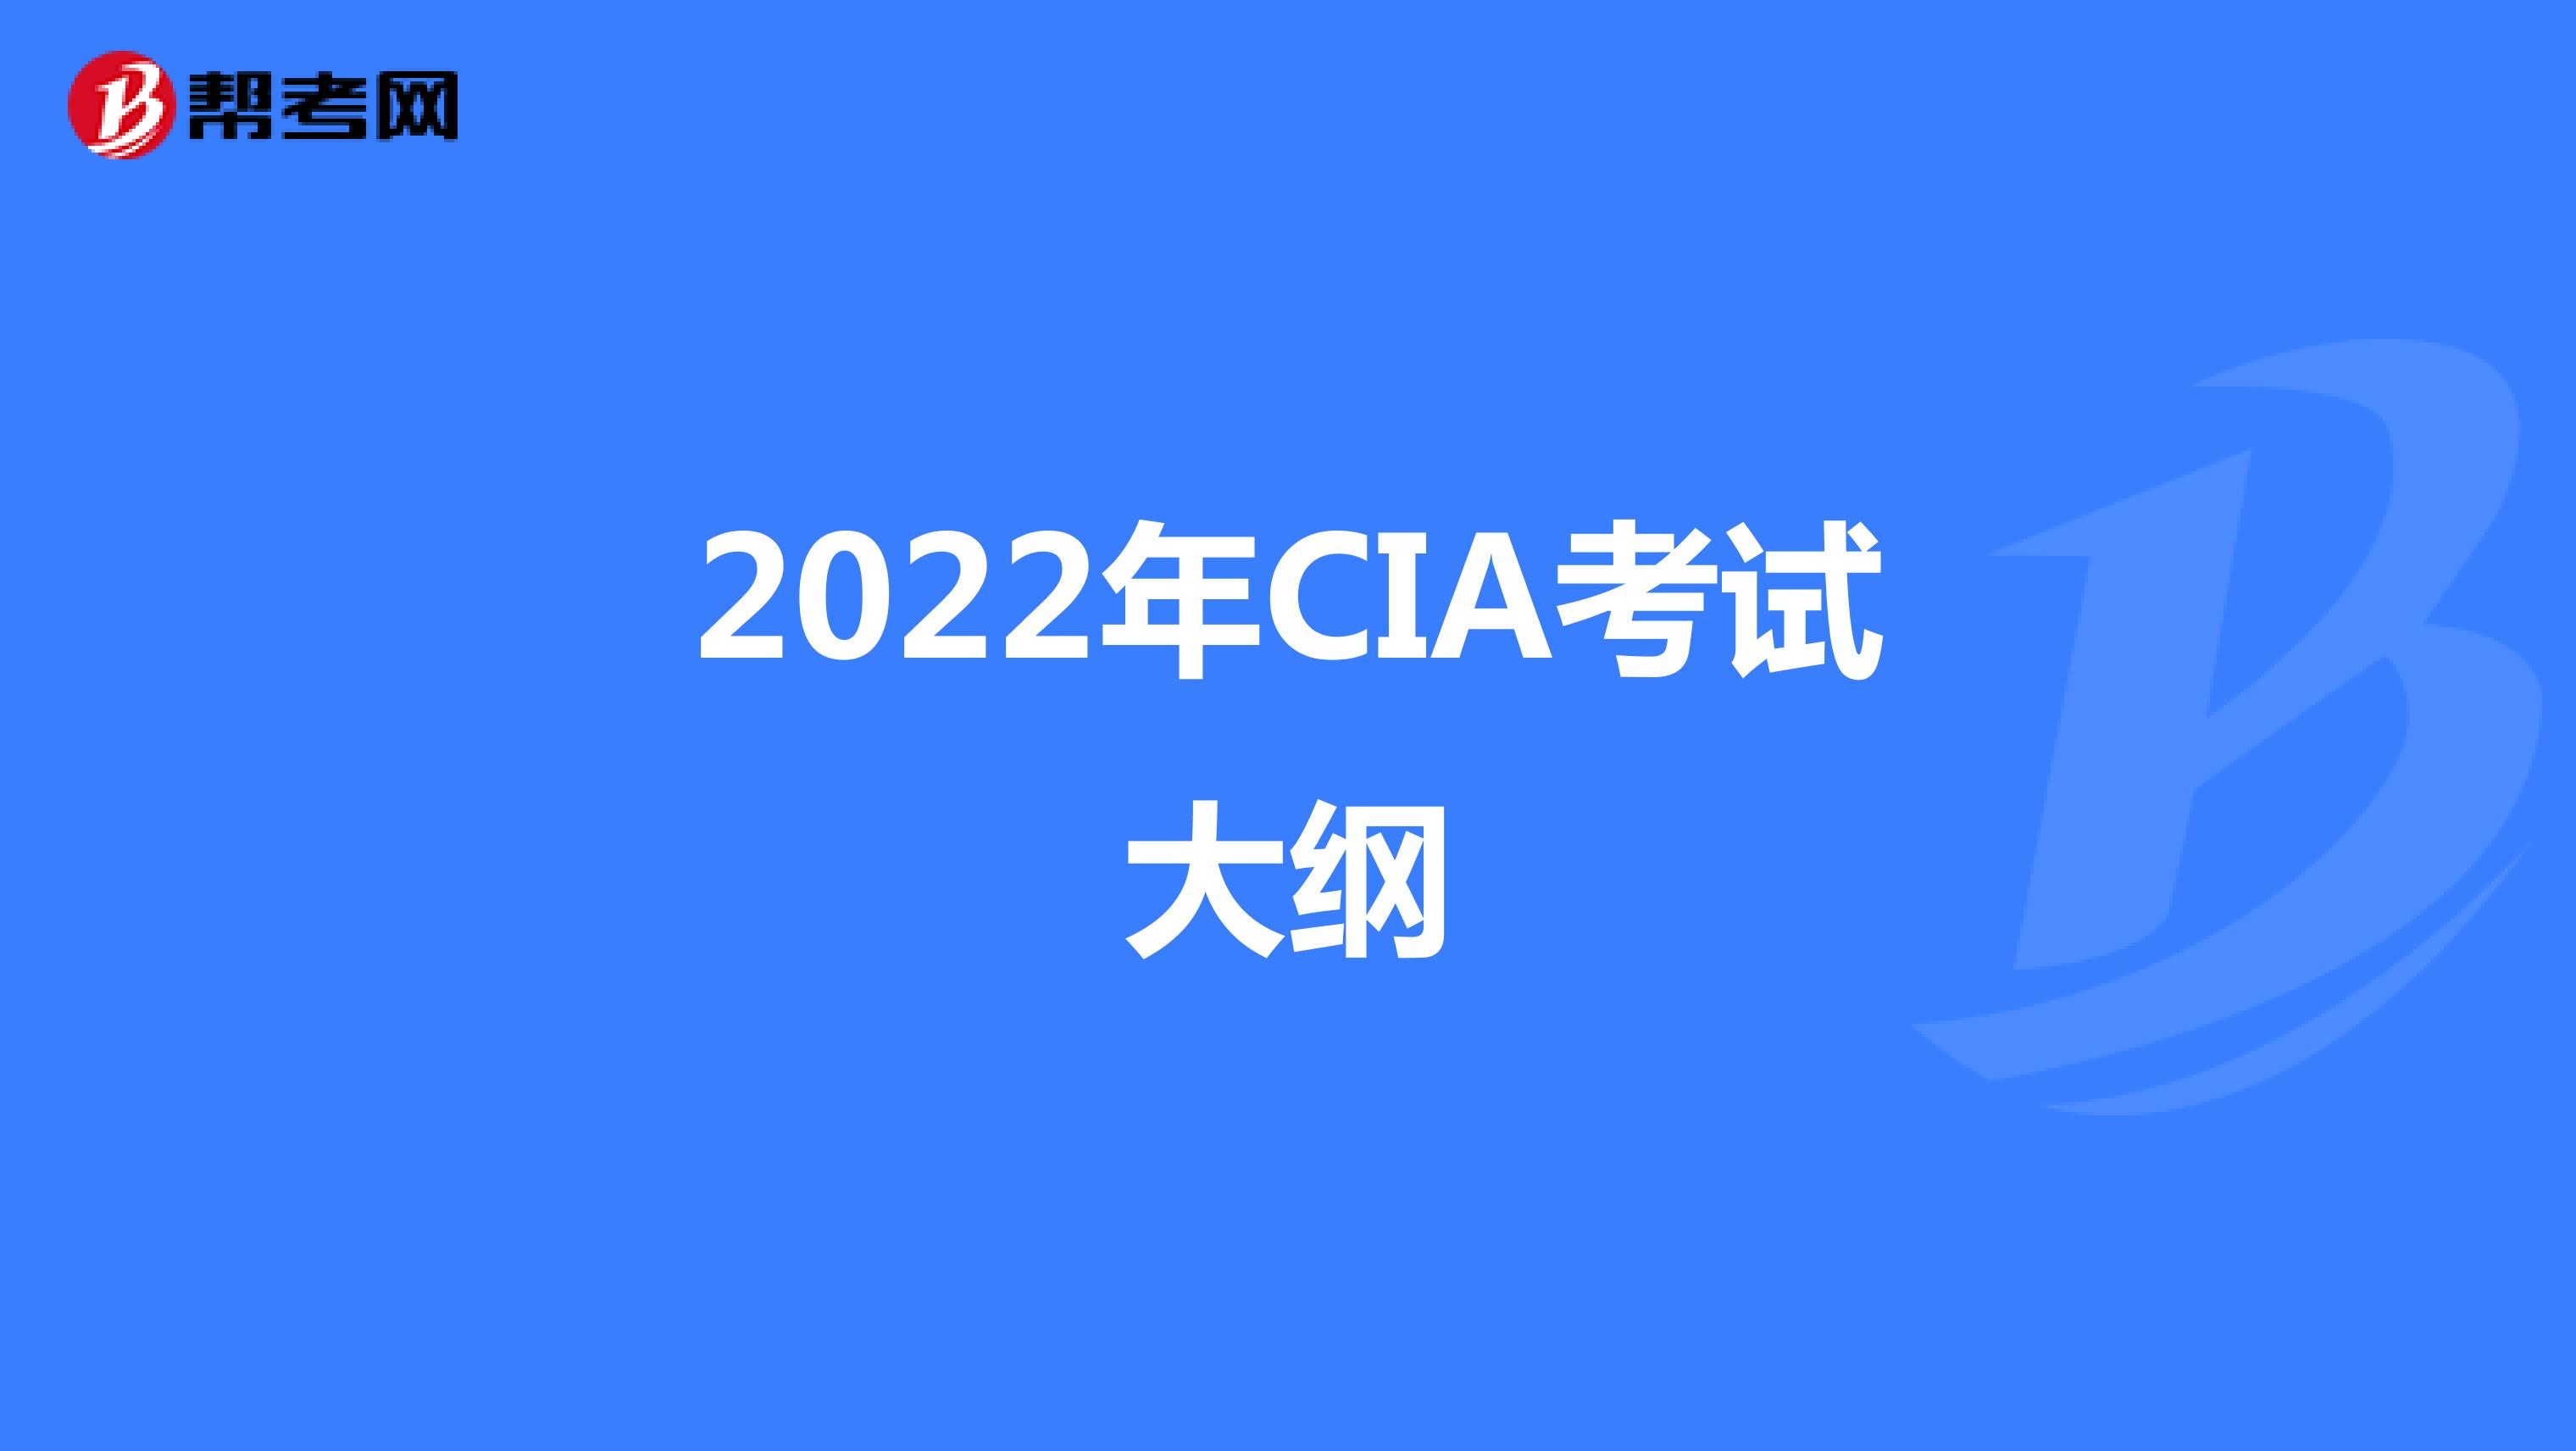 2022年CIA考试大纲